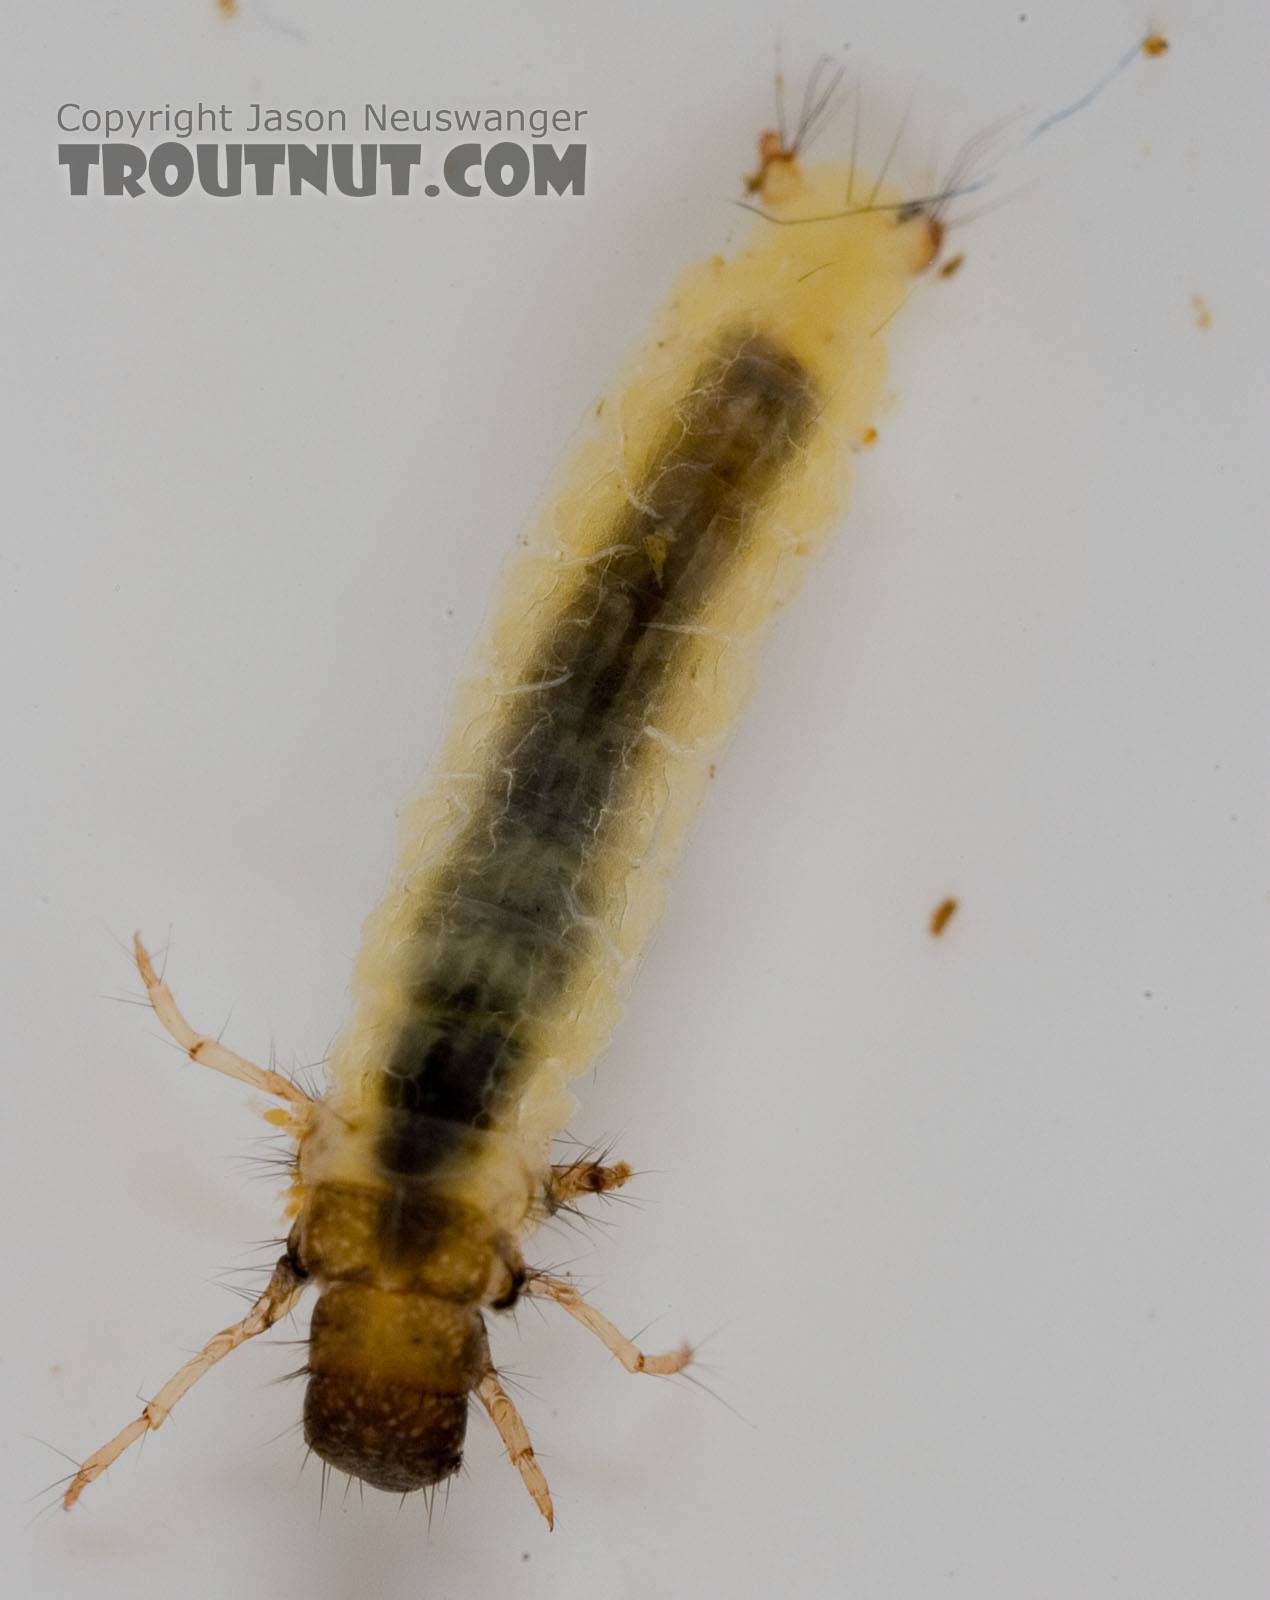 Lepidostoma (Little Brown Sedges) Little Brown Sedge Larva from the Delaware River in New York